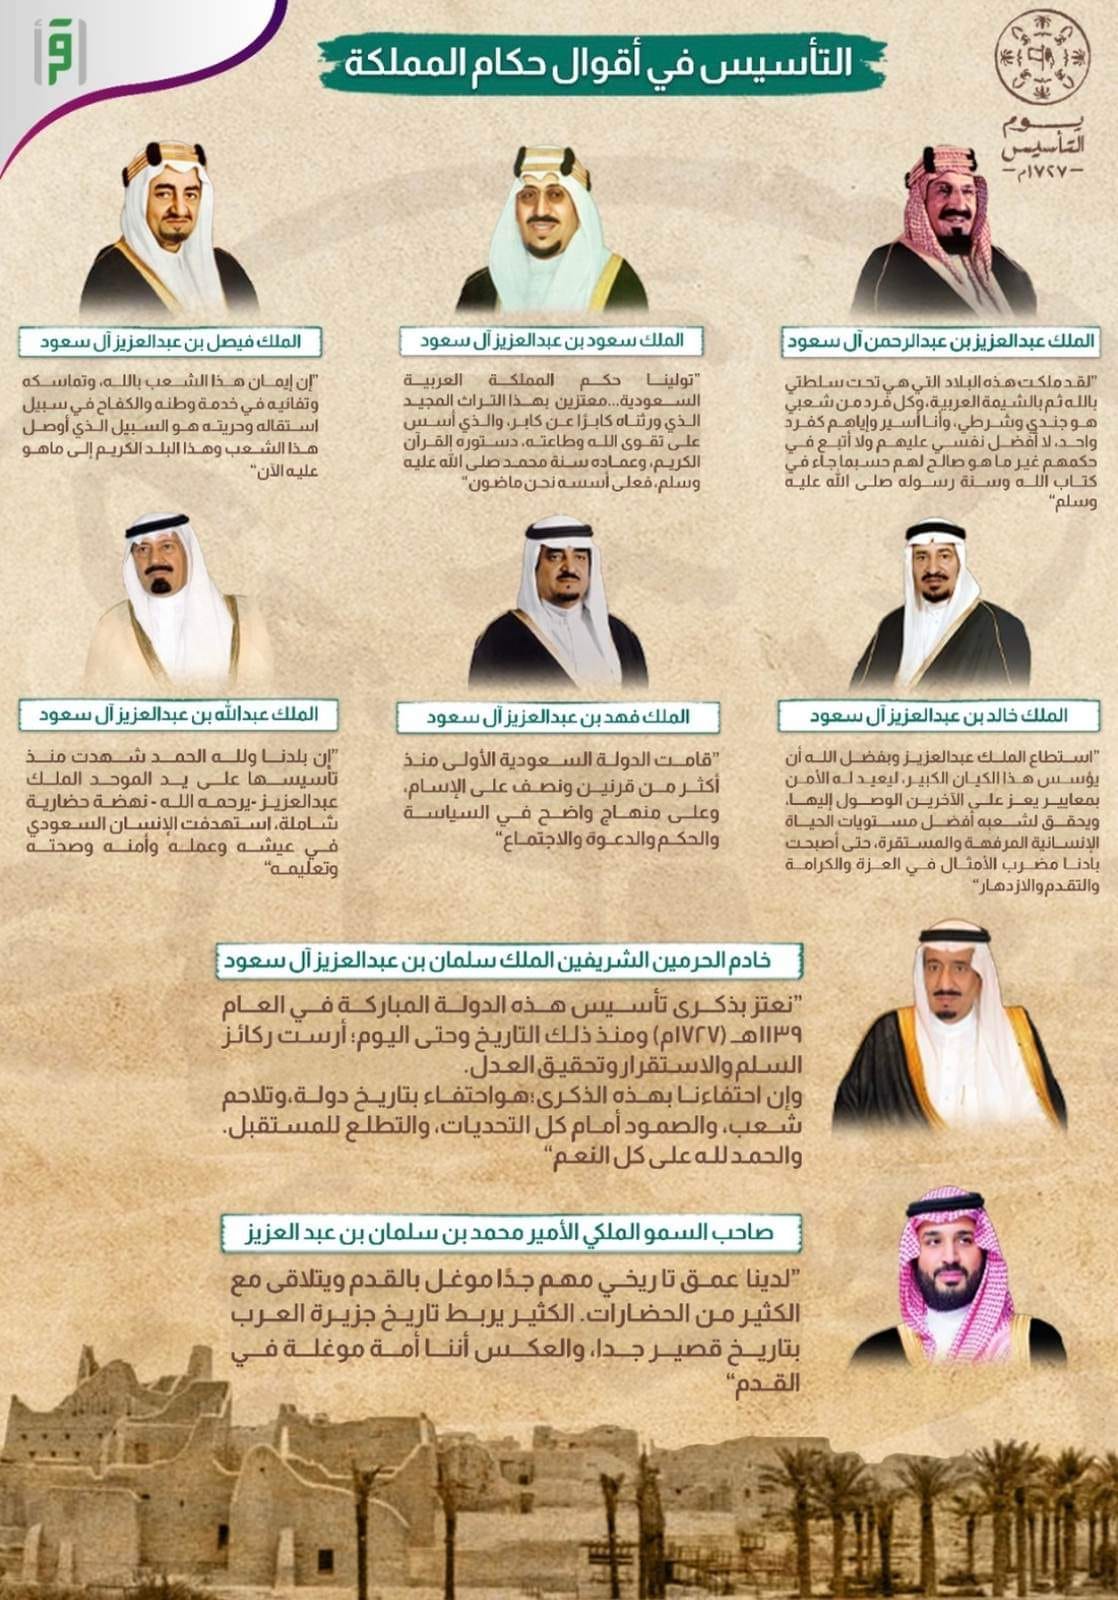 قناة اقرأ تقدم تغطية خاصة لاحتفالات المملكة العربية السعودية بيوم التأسيس 2